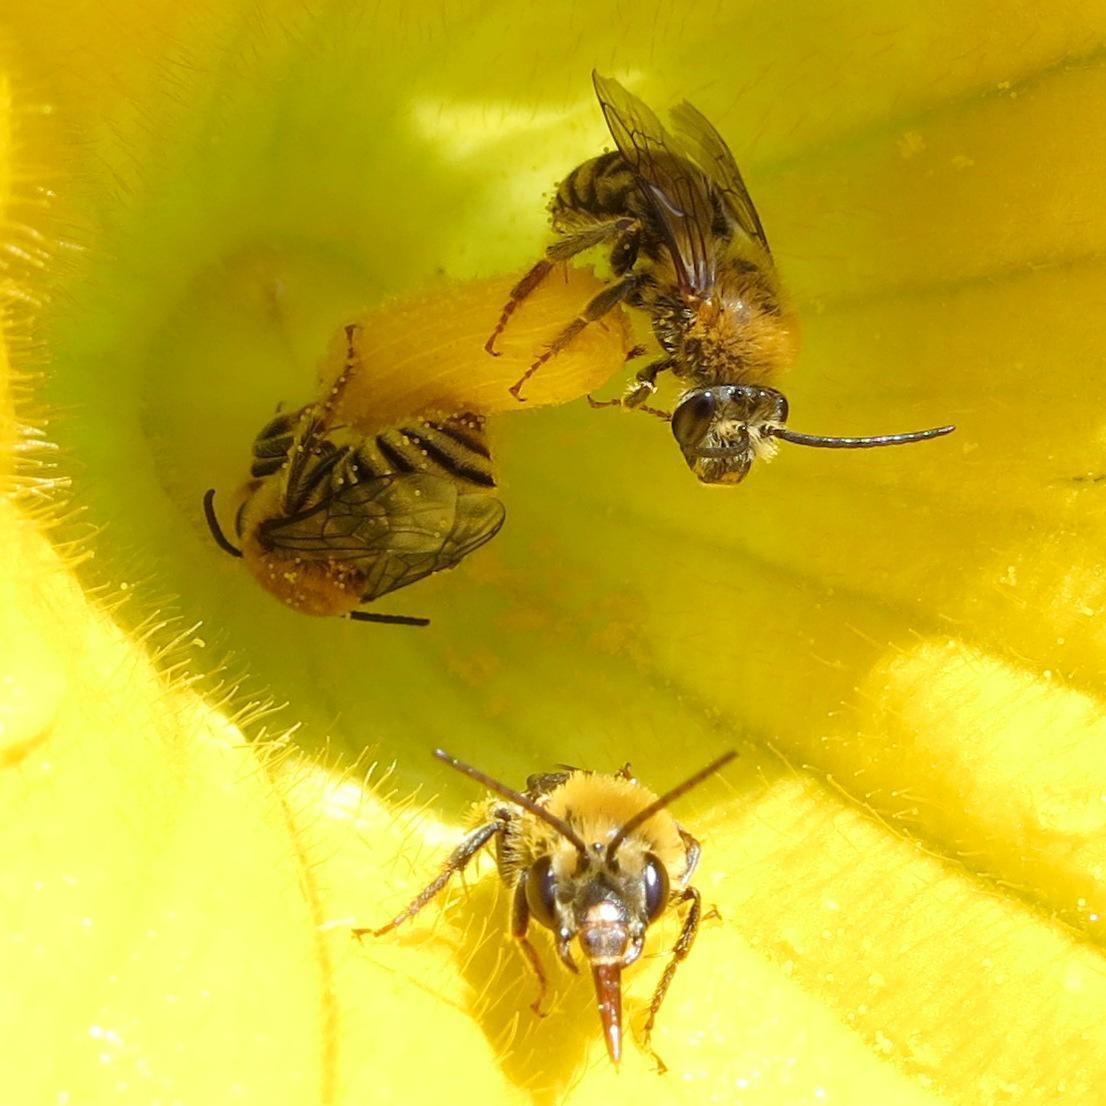 A close-up photo shows three squash bees inside a squash blossom.